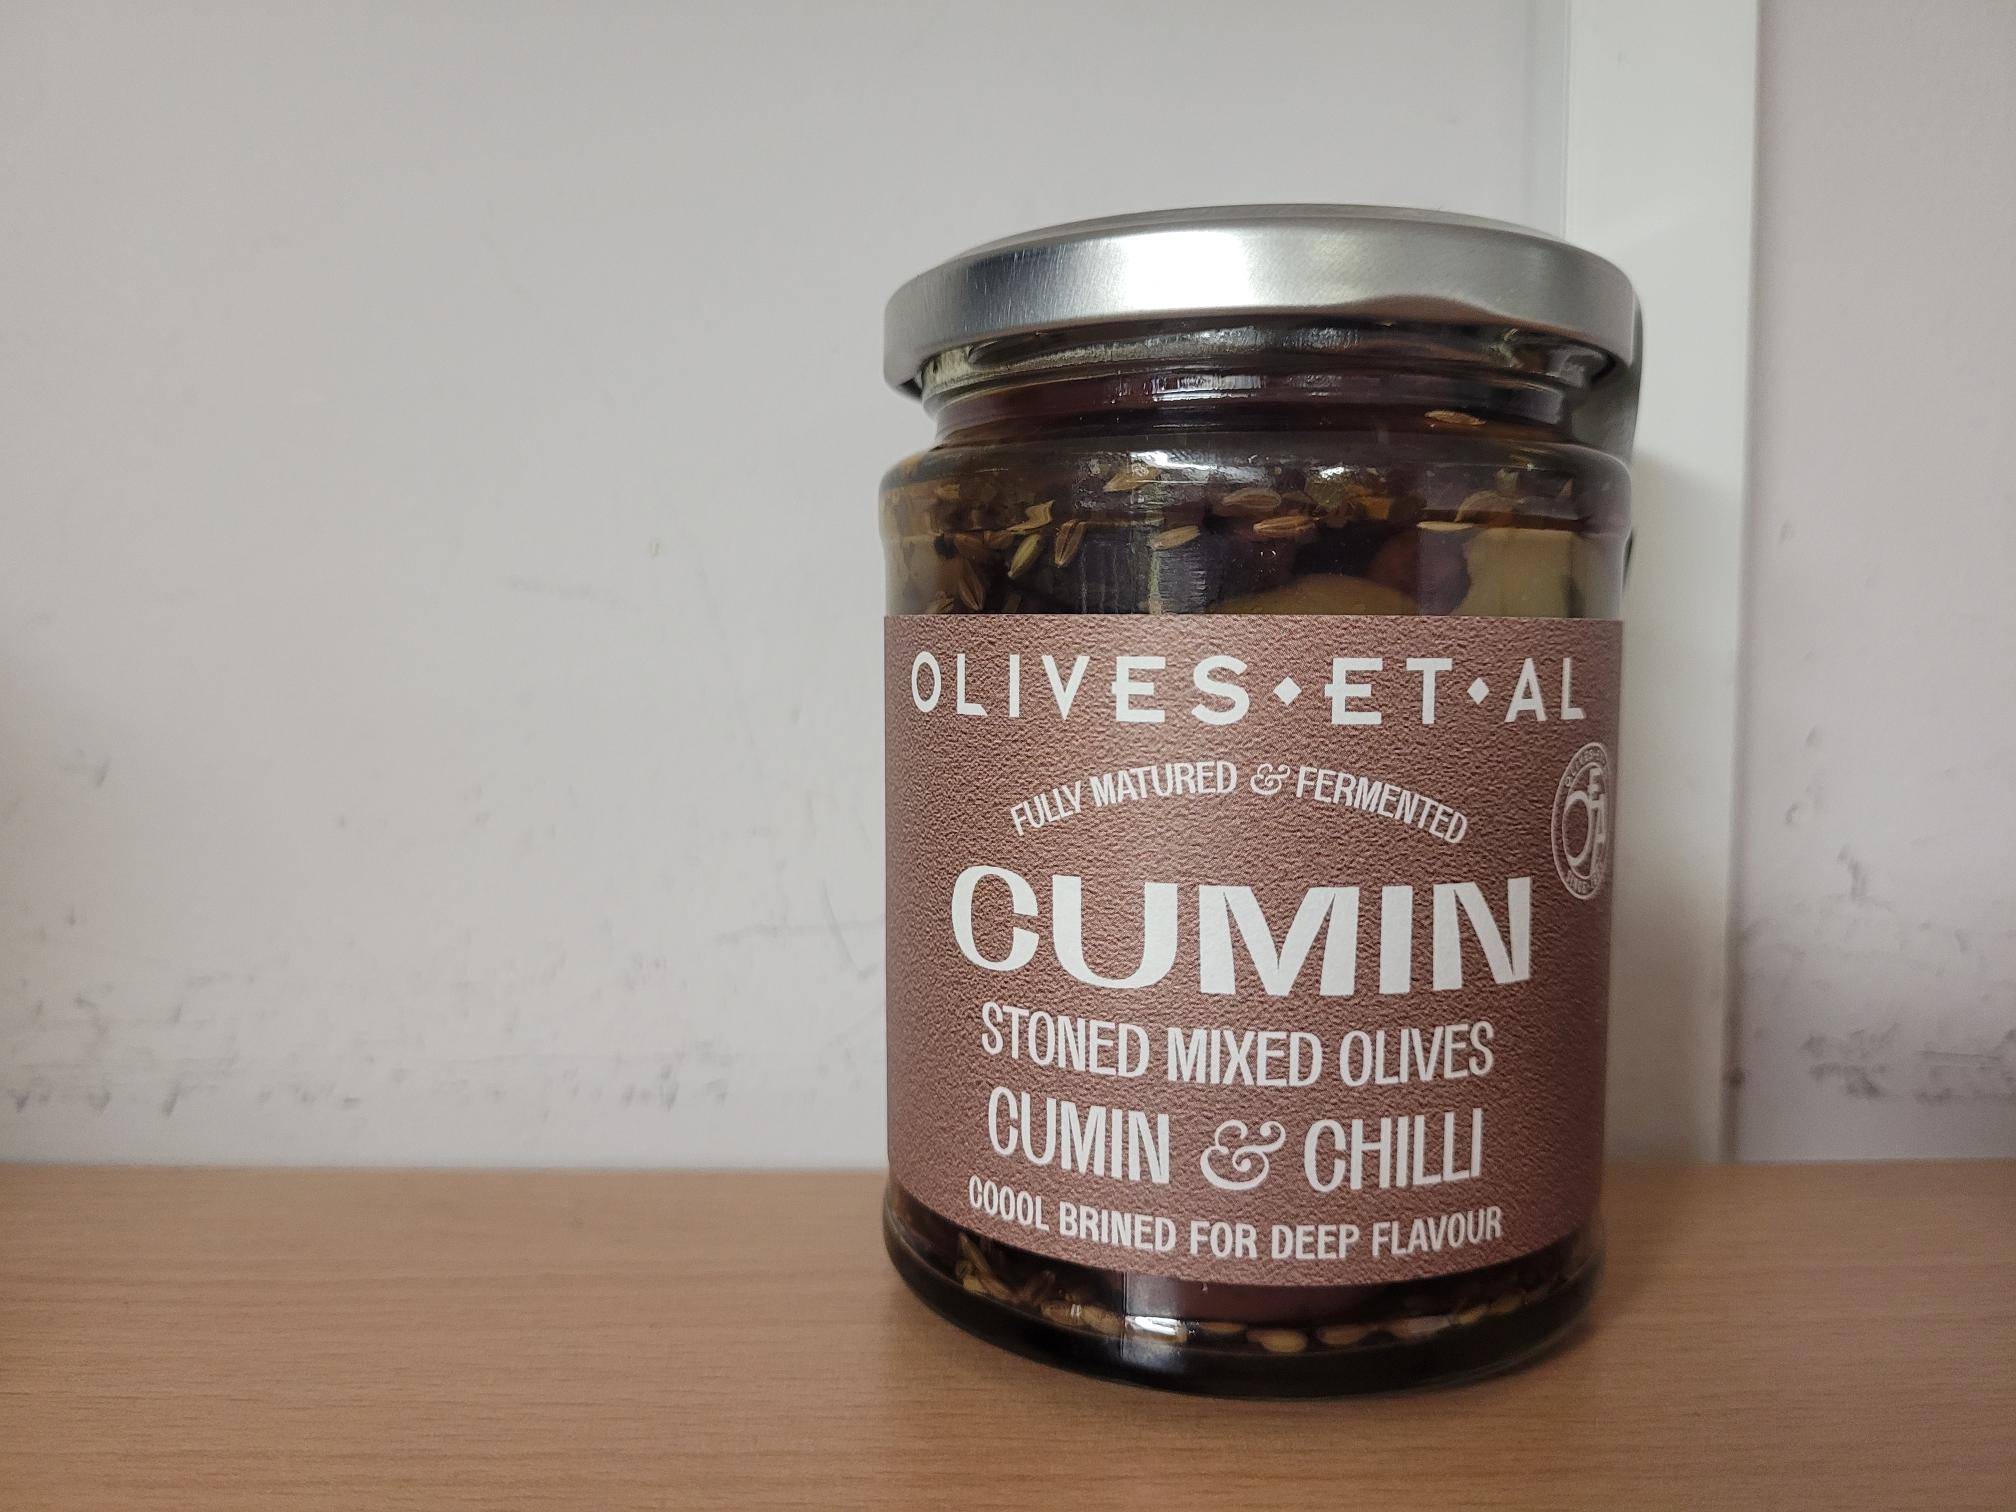 Olives et Al Cumin & Chilli Olives Olives